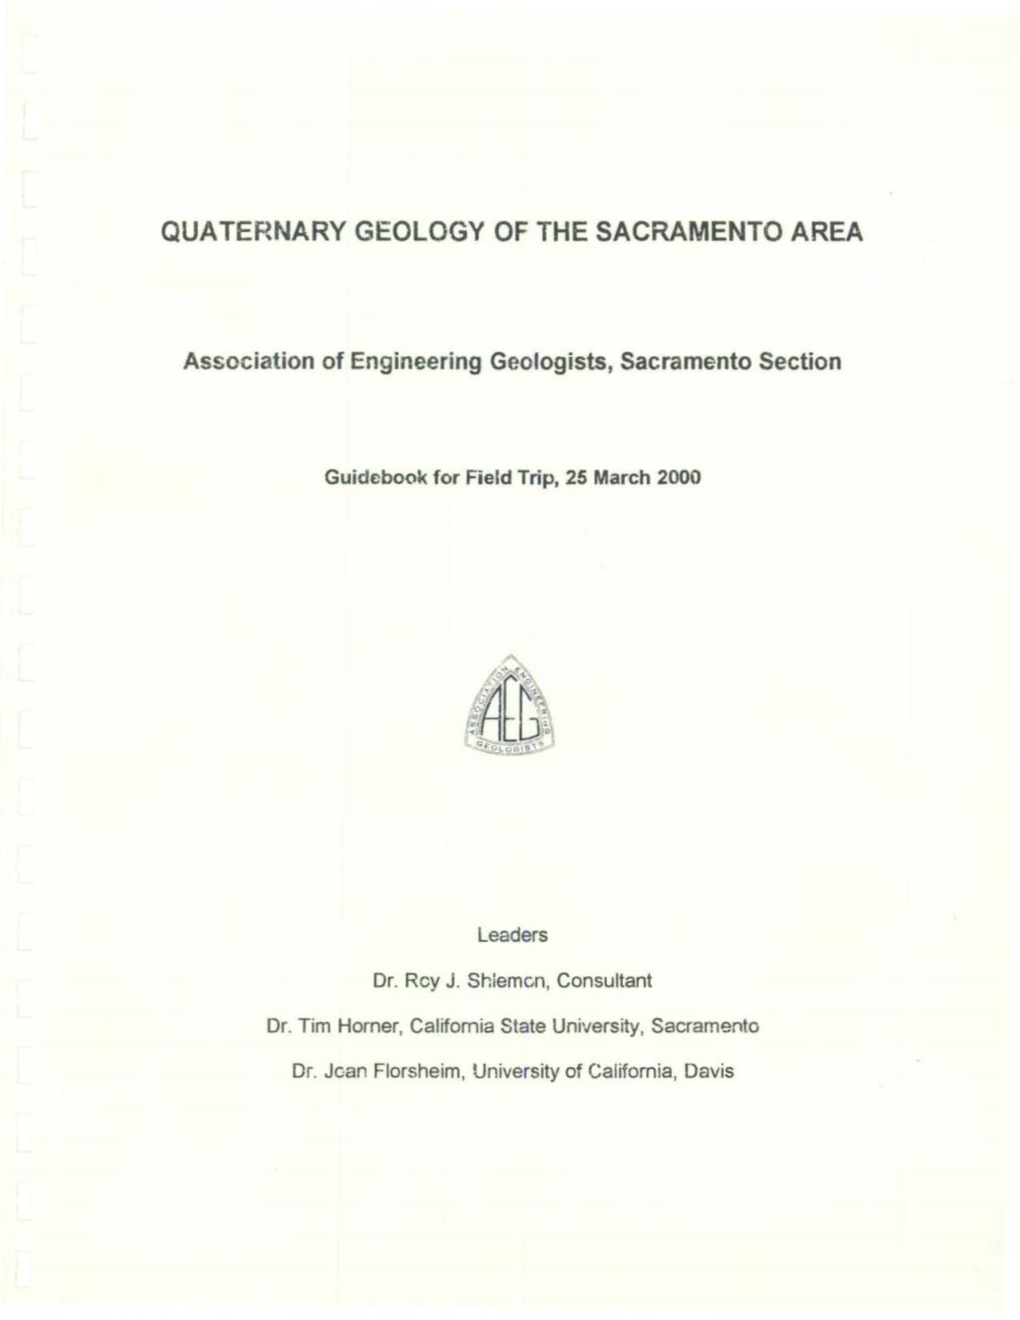 Quaternary Geology of the Sacramento Area